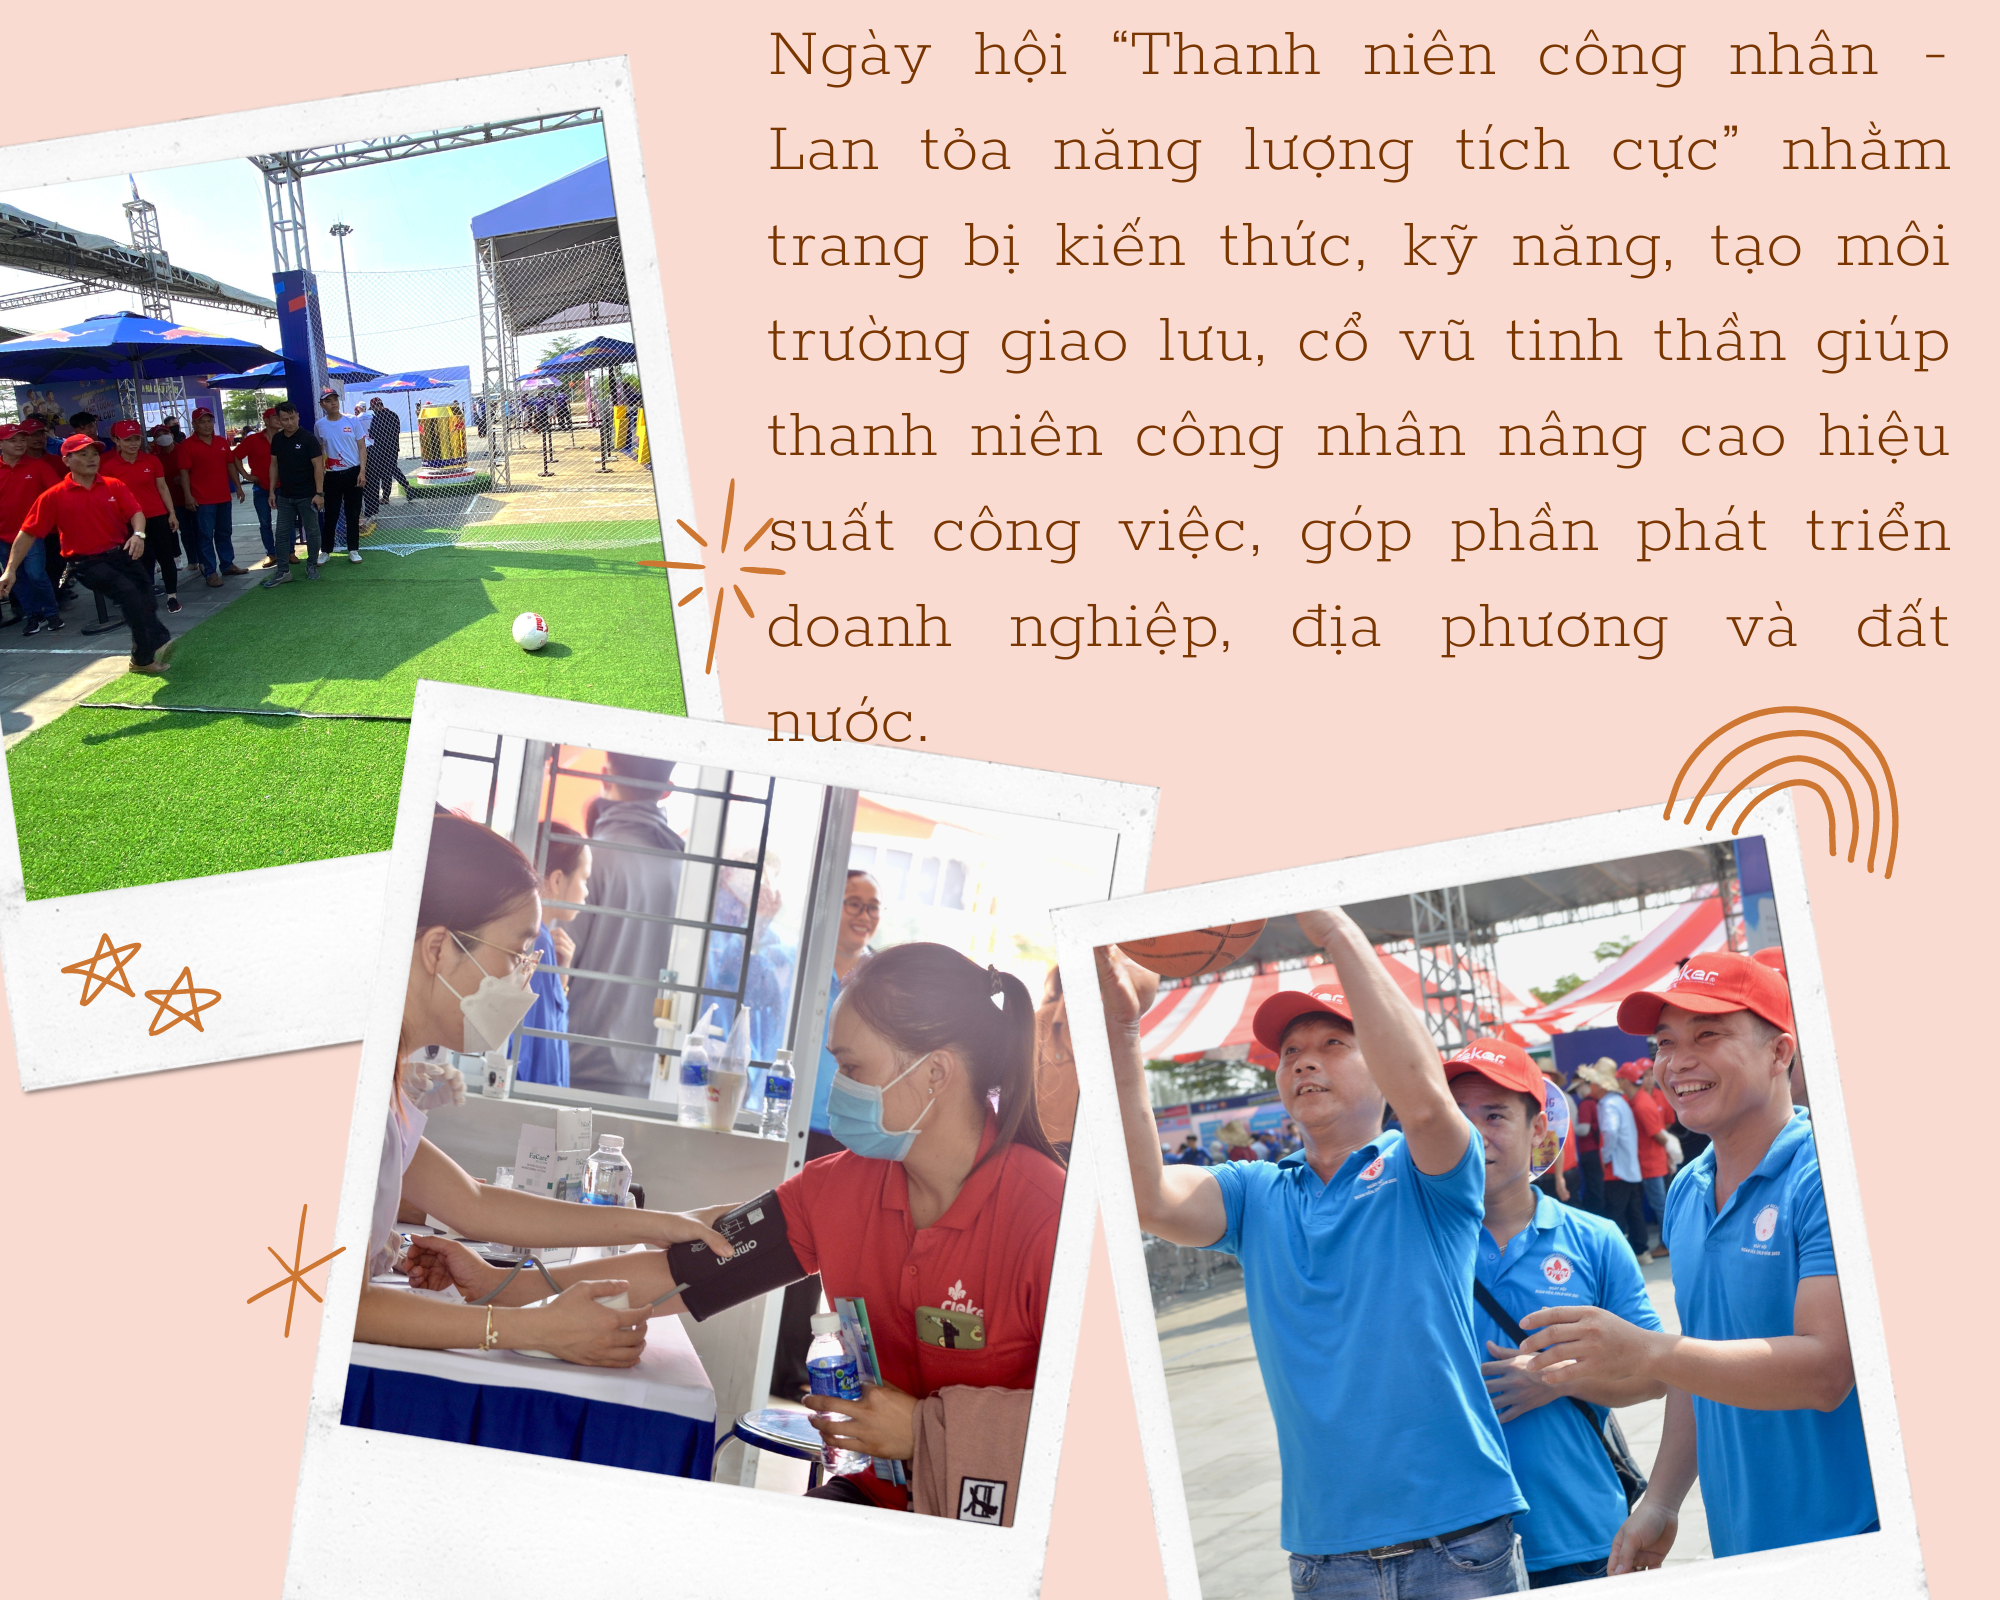 Quảng Nam: Sôi động Ngày hội thanh niên công nhân lan tỏa năng lượng tích cực